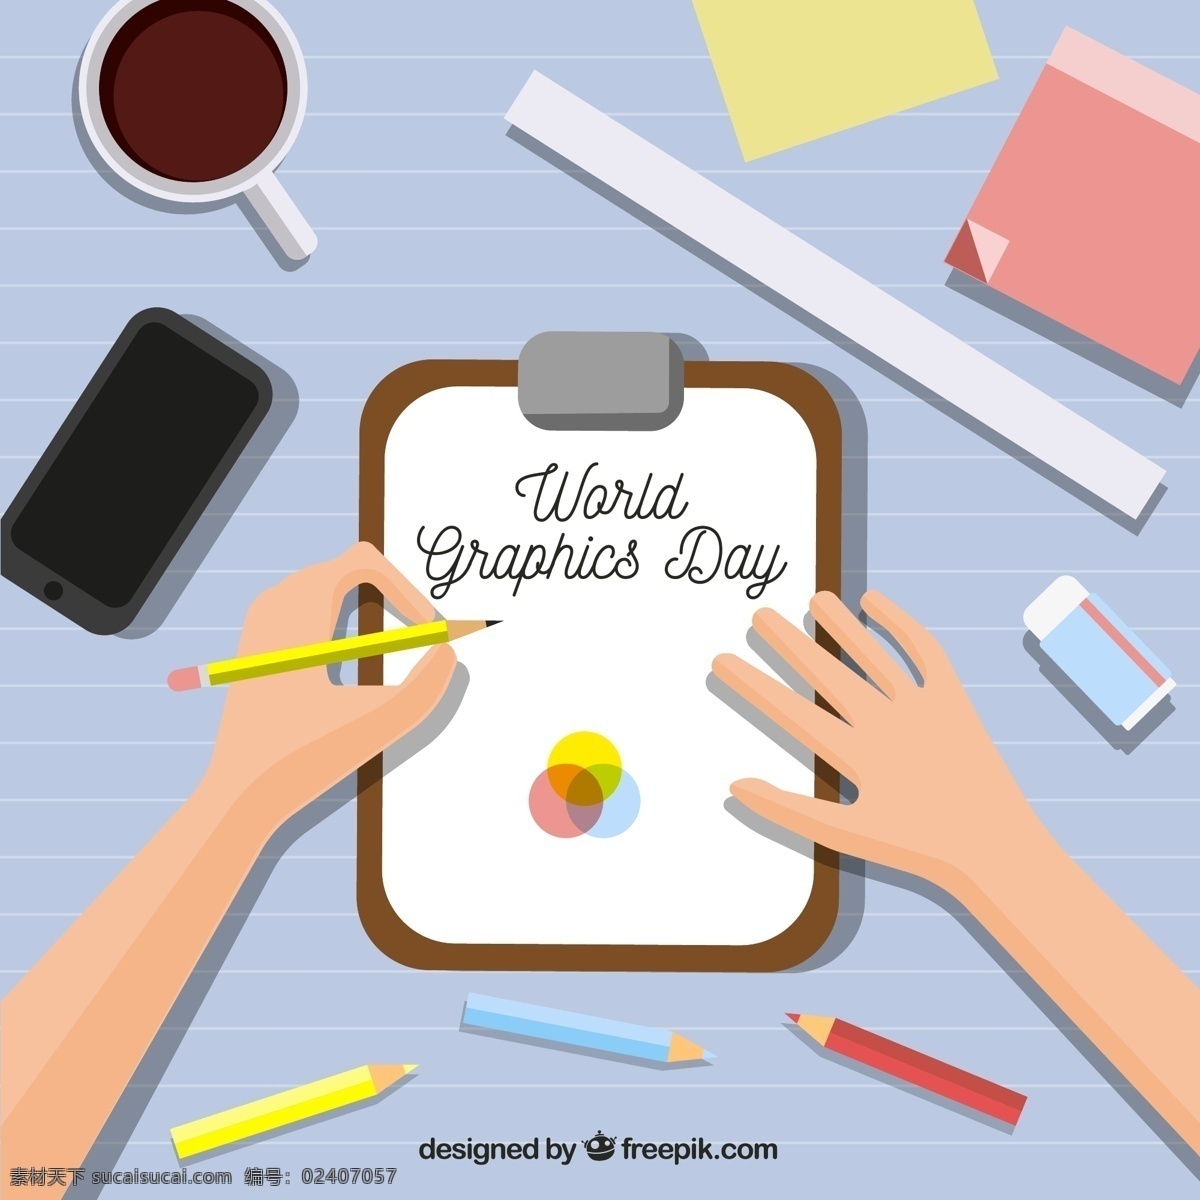 创意 世界 平面设计 日 写字 手臂 便利贴 咖啡 铅笔 桌子 平面设计日 橡皮 尺子 手机 标志图标 其他图标